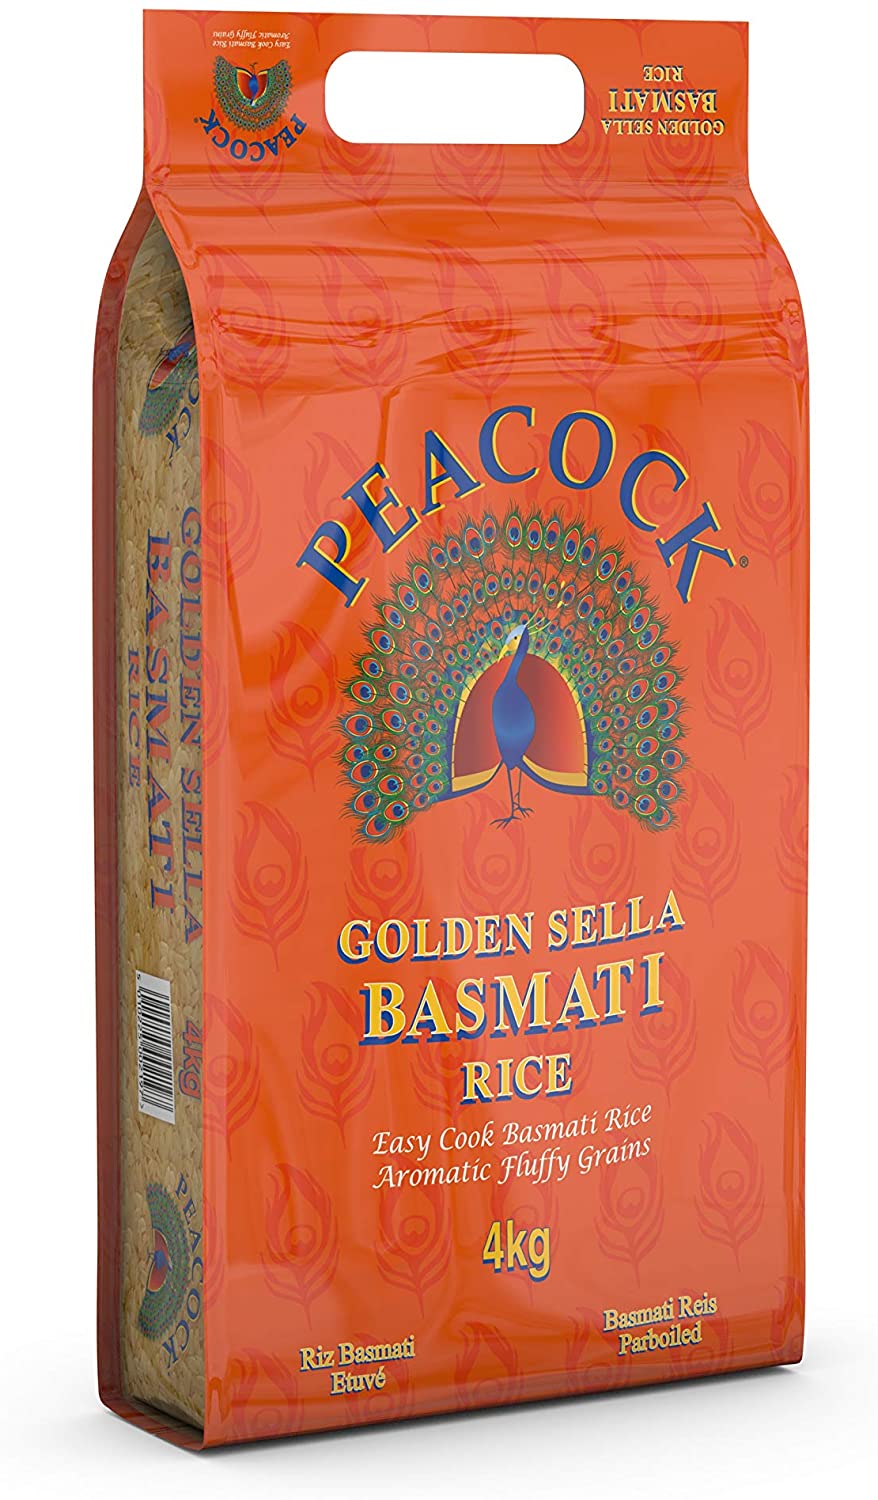 Peacock Golden Sella Basmati 4kg Box of 1